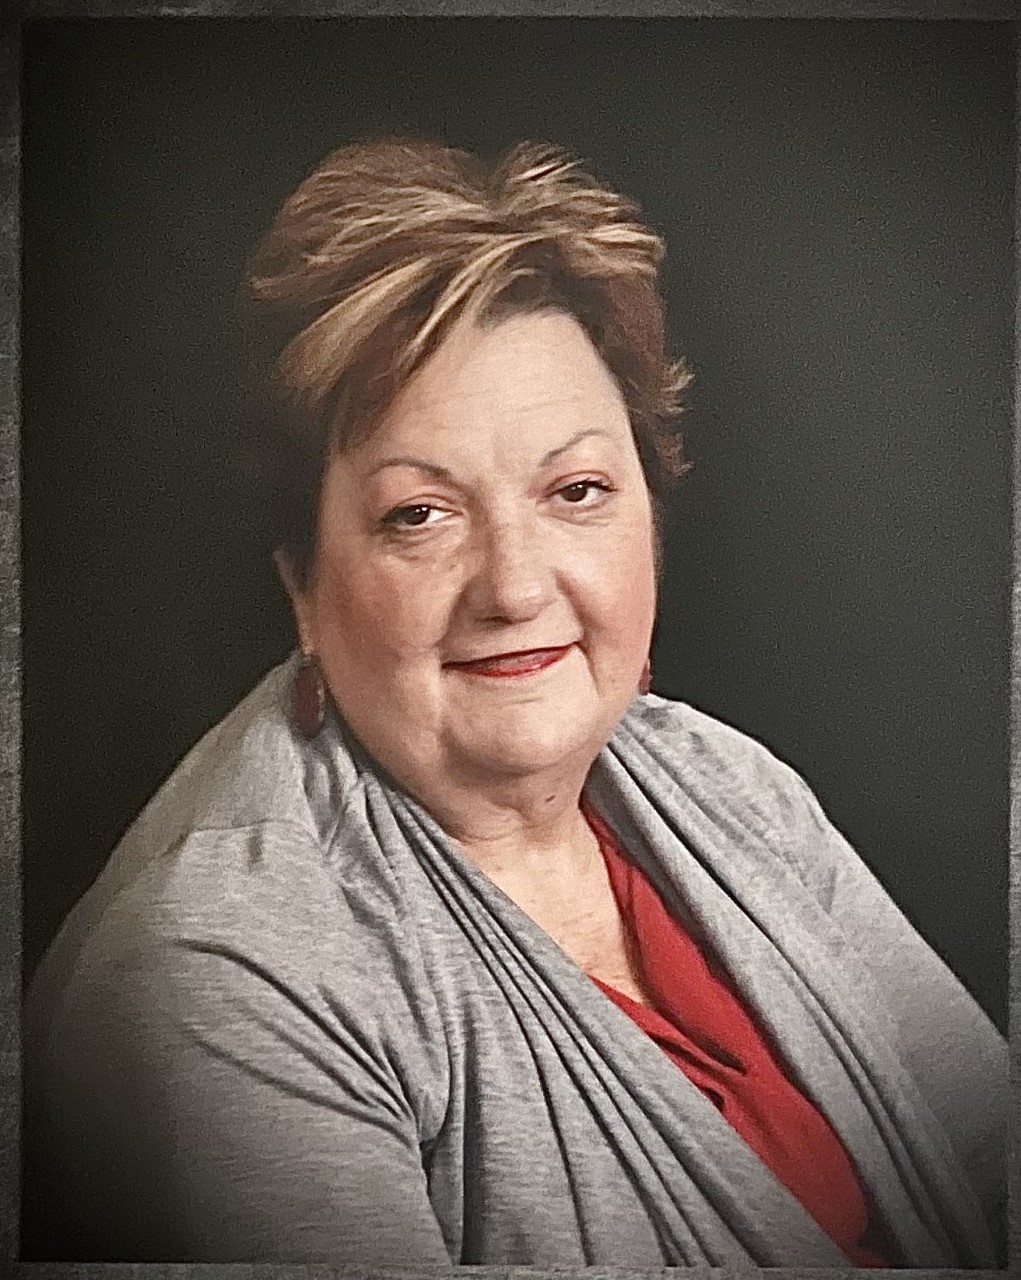 Obituary for Mary Annette Horne